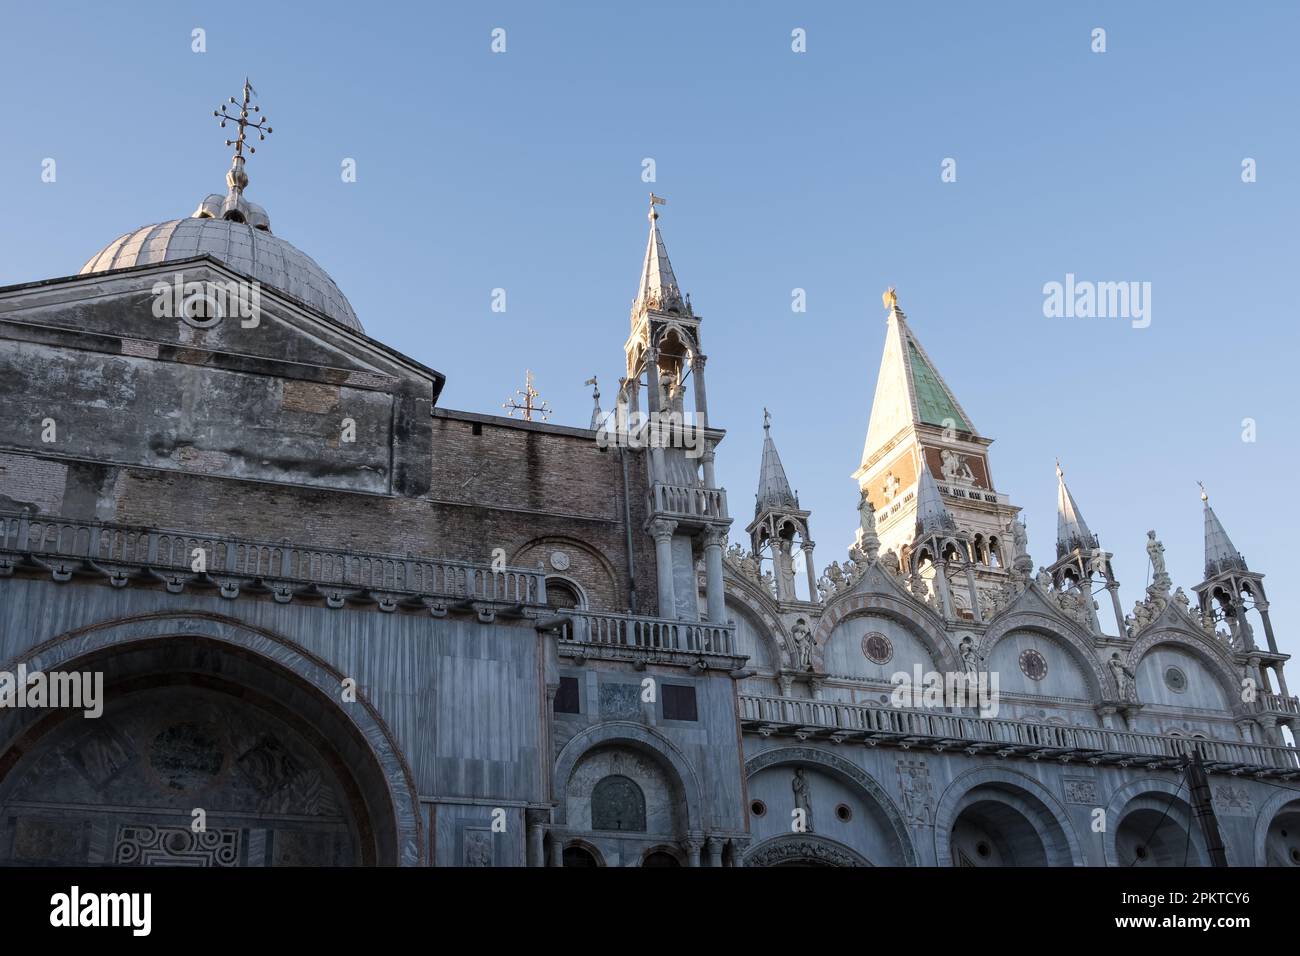 Architektonisches Detail der Patriarchalkathedrale der Markuskirche, allgemein bekannt als Markusdom, der Kathedrale von Venedig Stockfoto